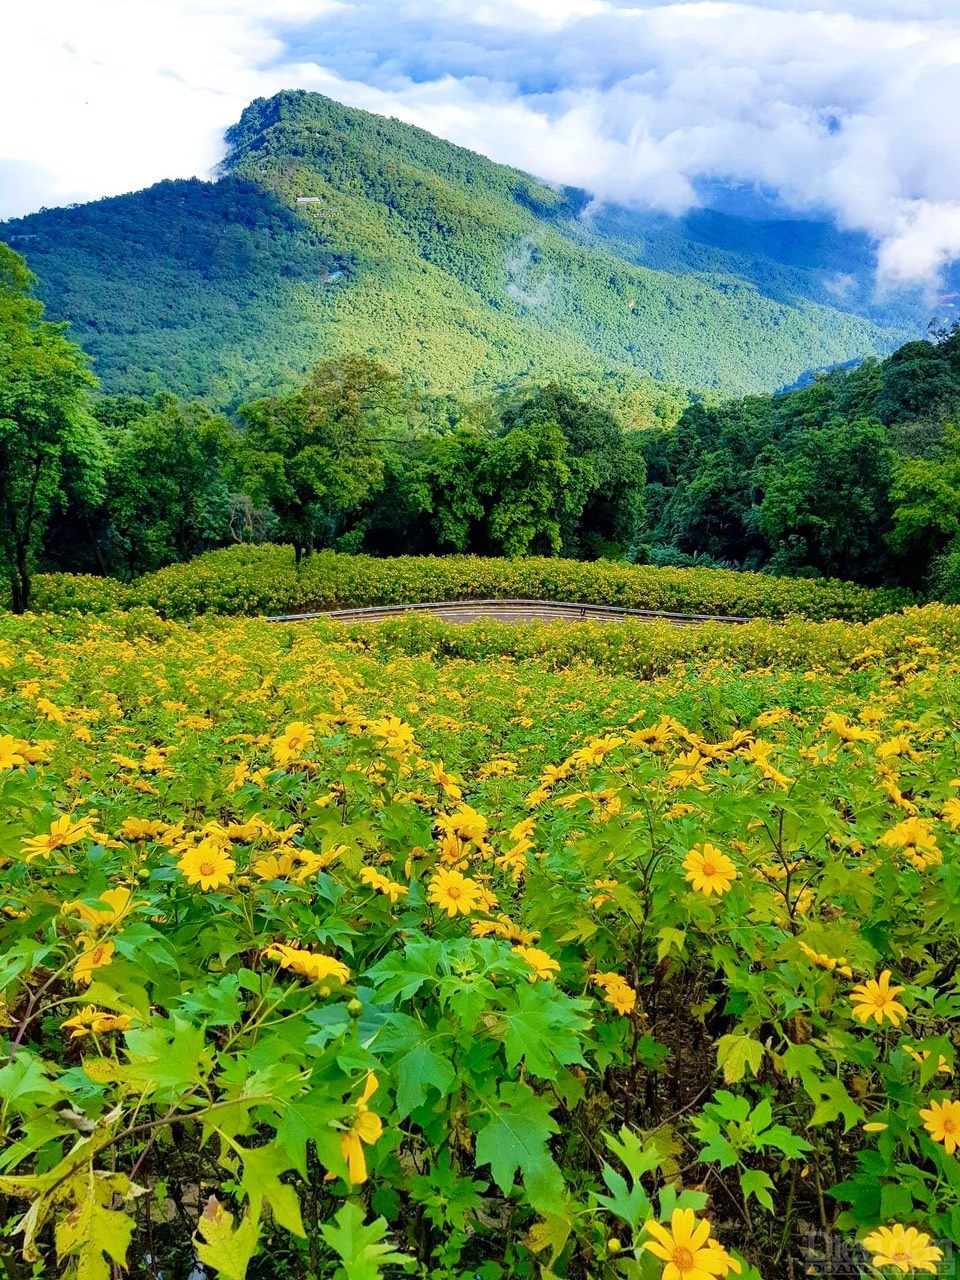 Rừng hoa dã quỳ với màu vàng rực rỡ đã trở thành nét đặc trưng thu hút nhiều du khách đến Vườn Quốc gia Ba Vì vào thời gian này.